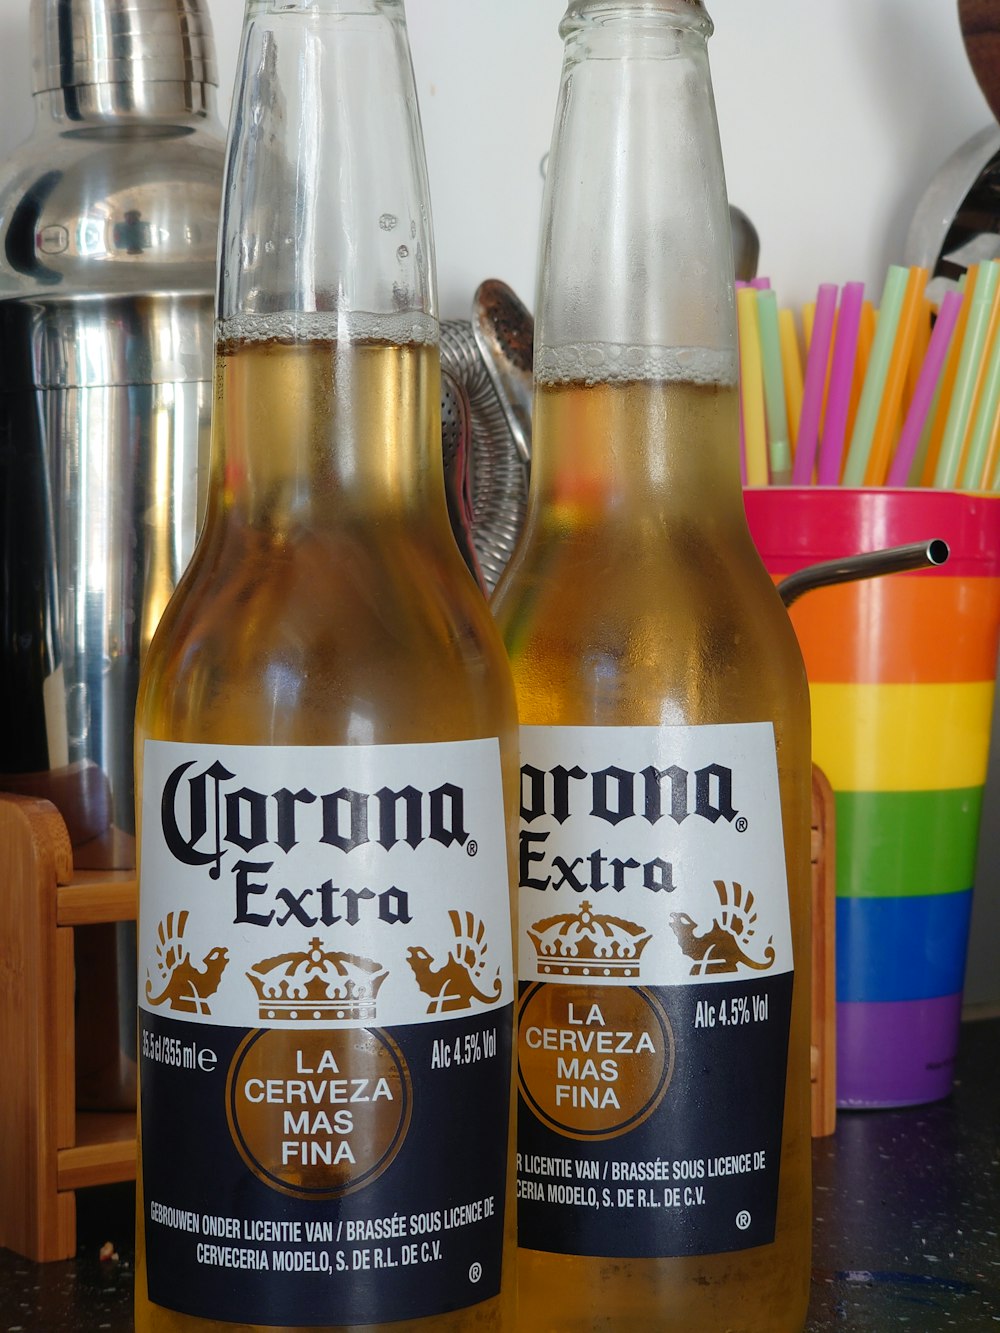 corona extra beer bottle on table